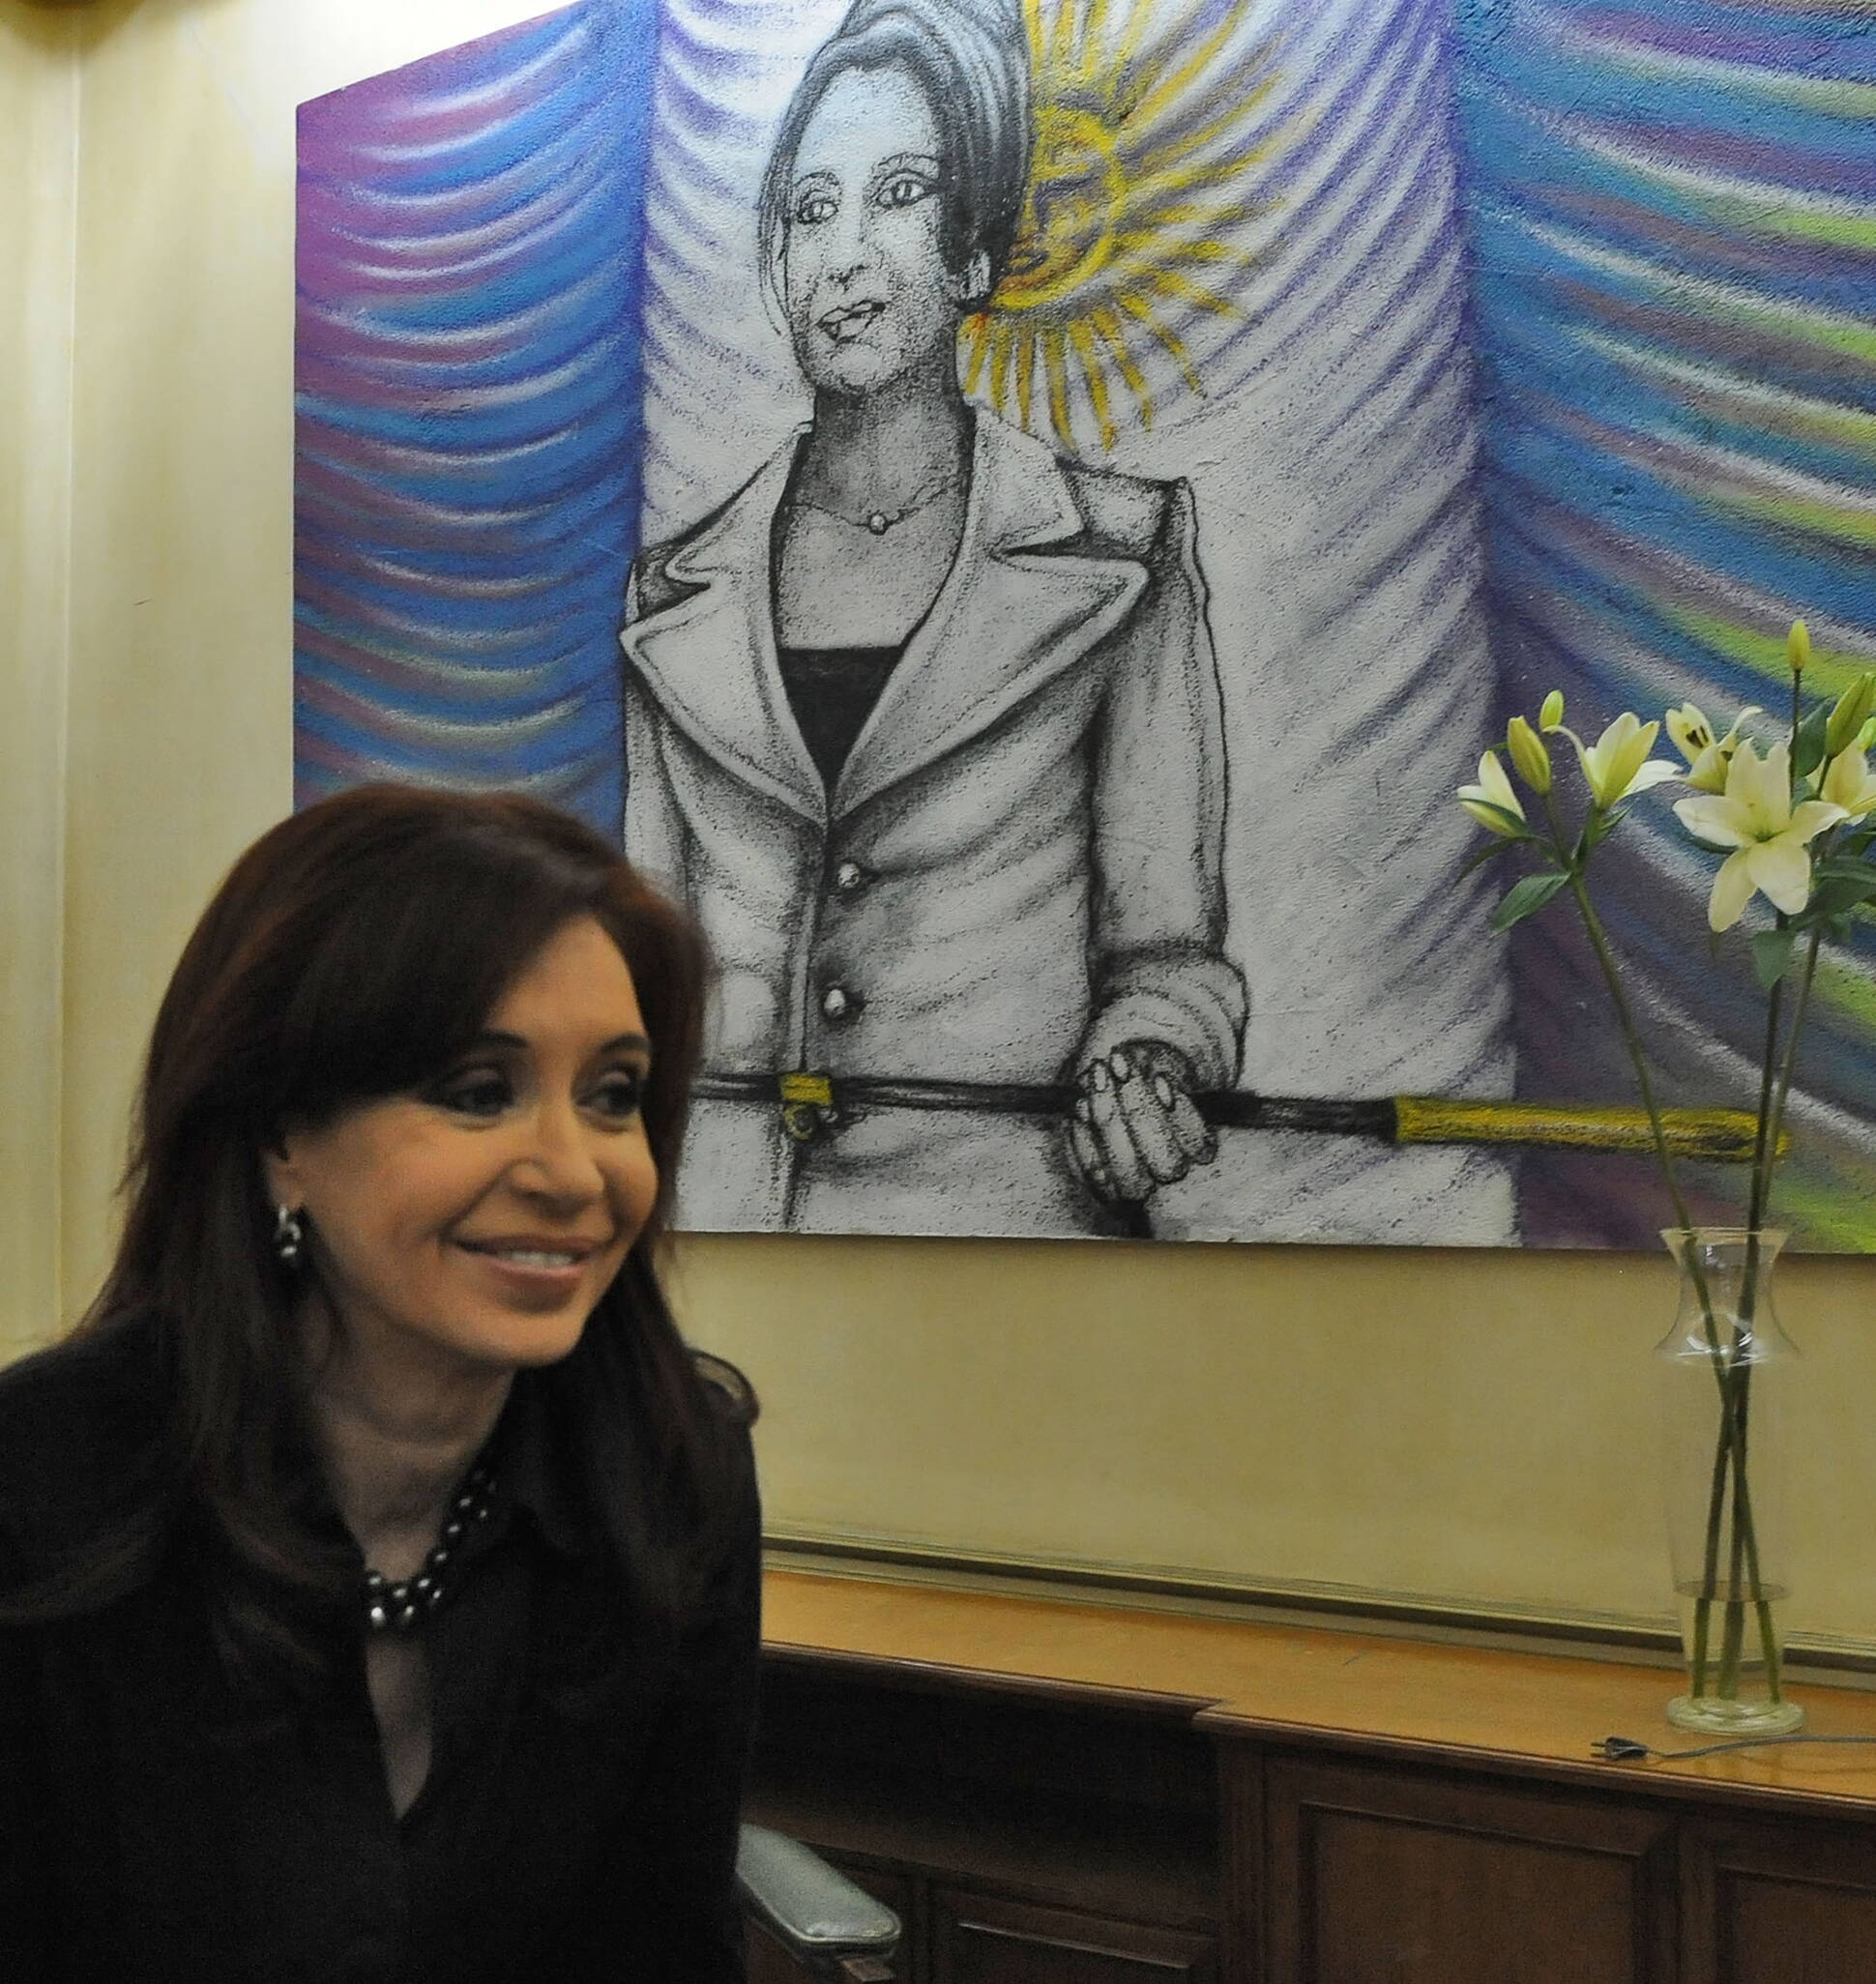 Cristina Fernández anunció que buscará su reelección: “Vamos a someternos una vez más” a la voluntad popular, aseguró